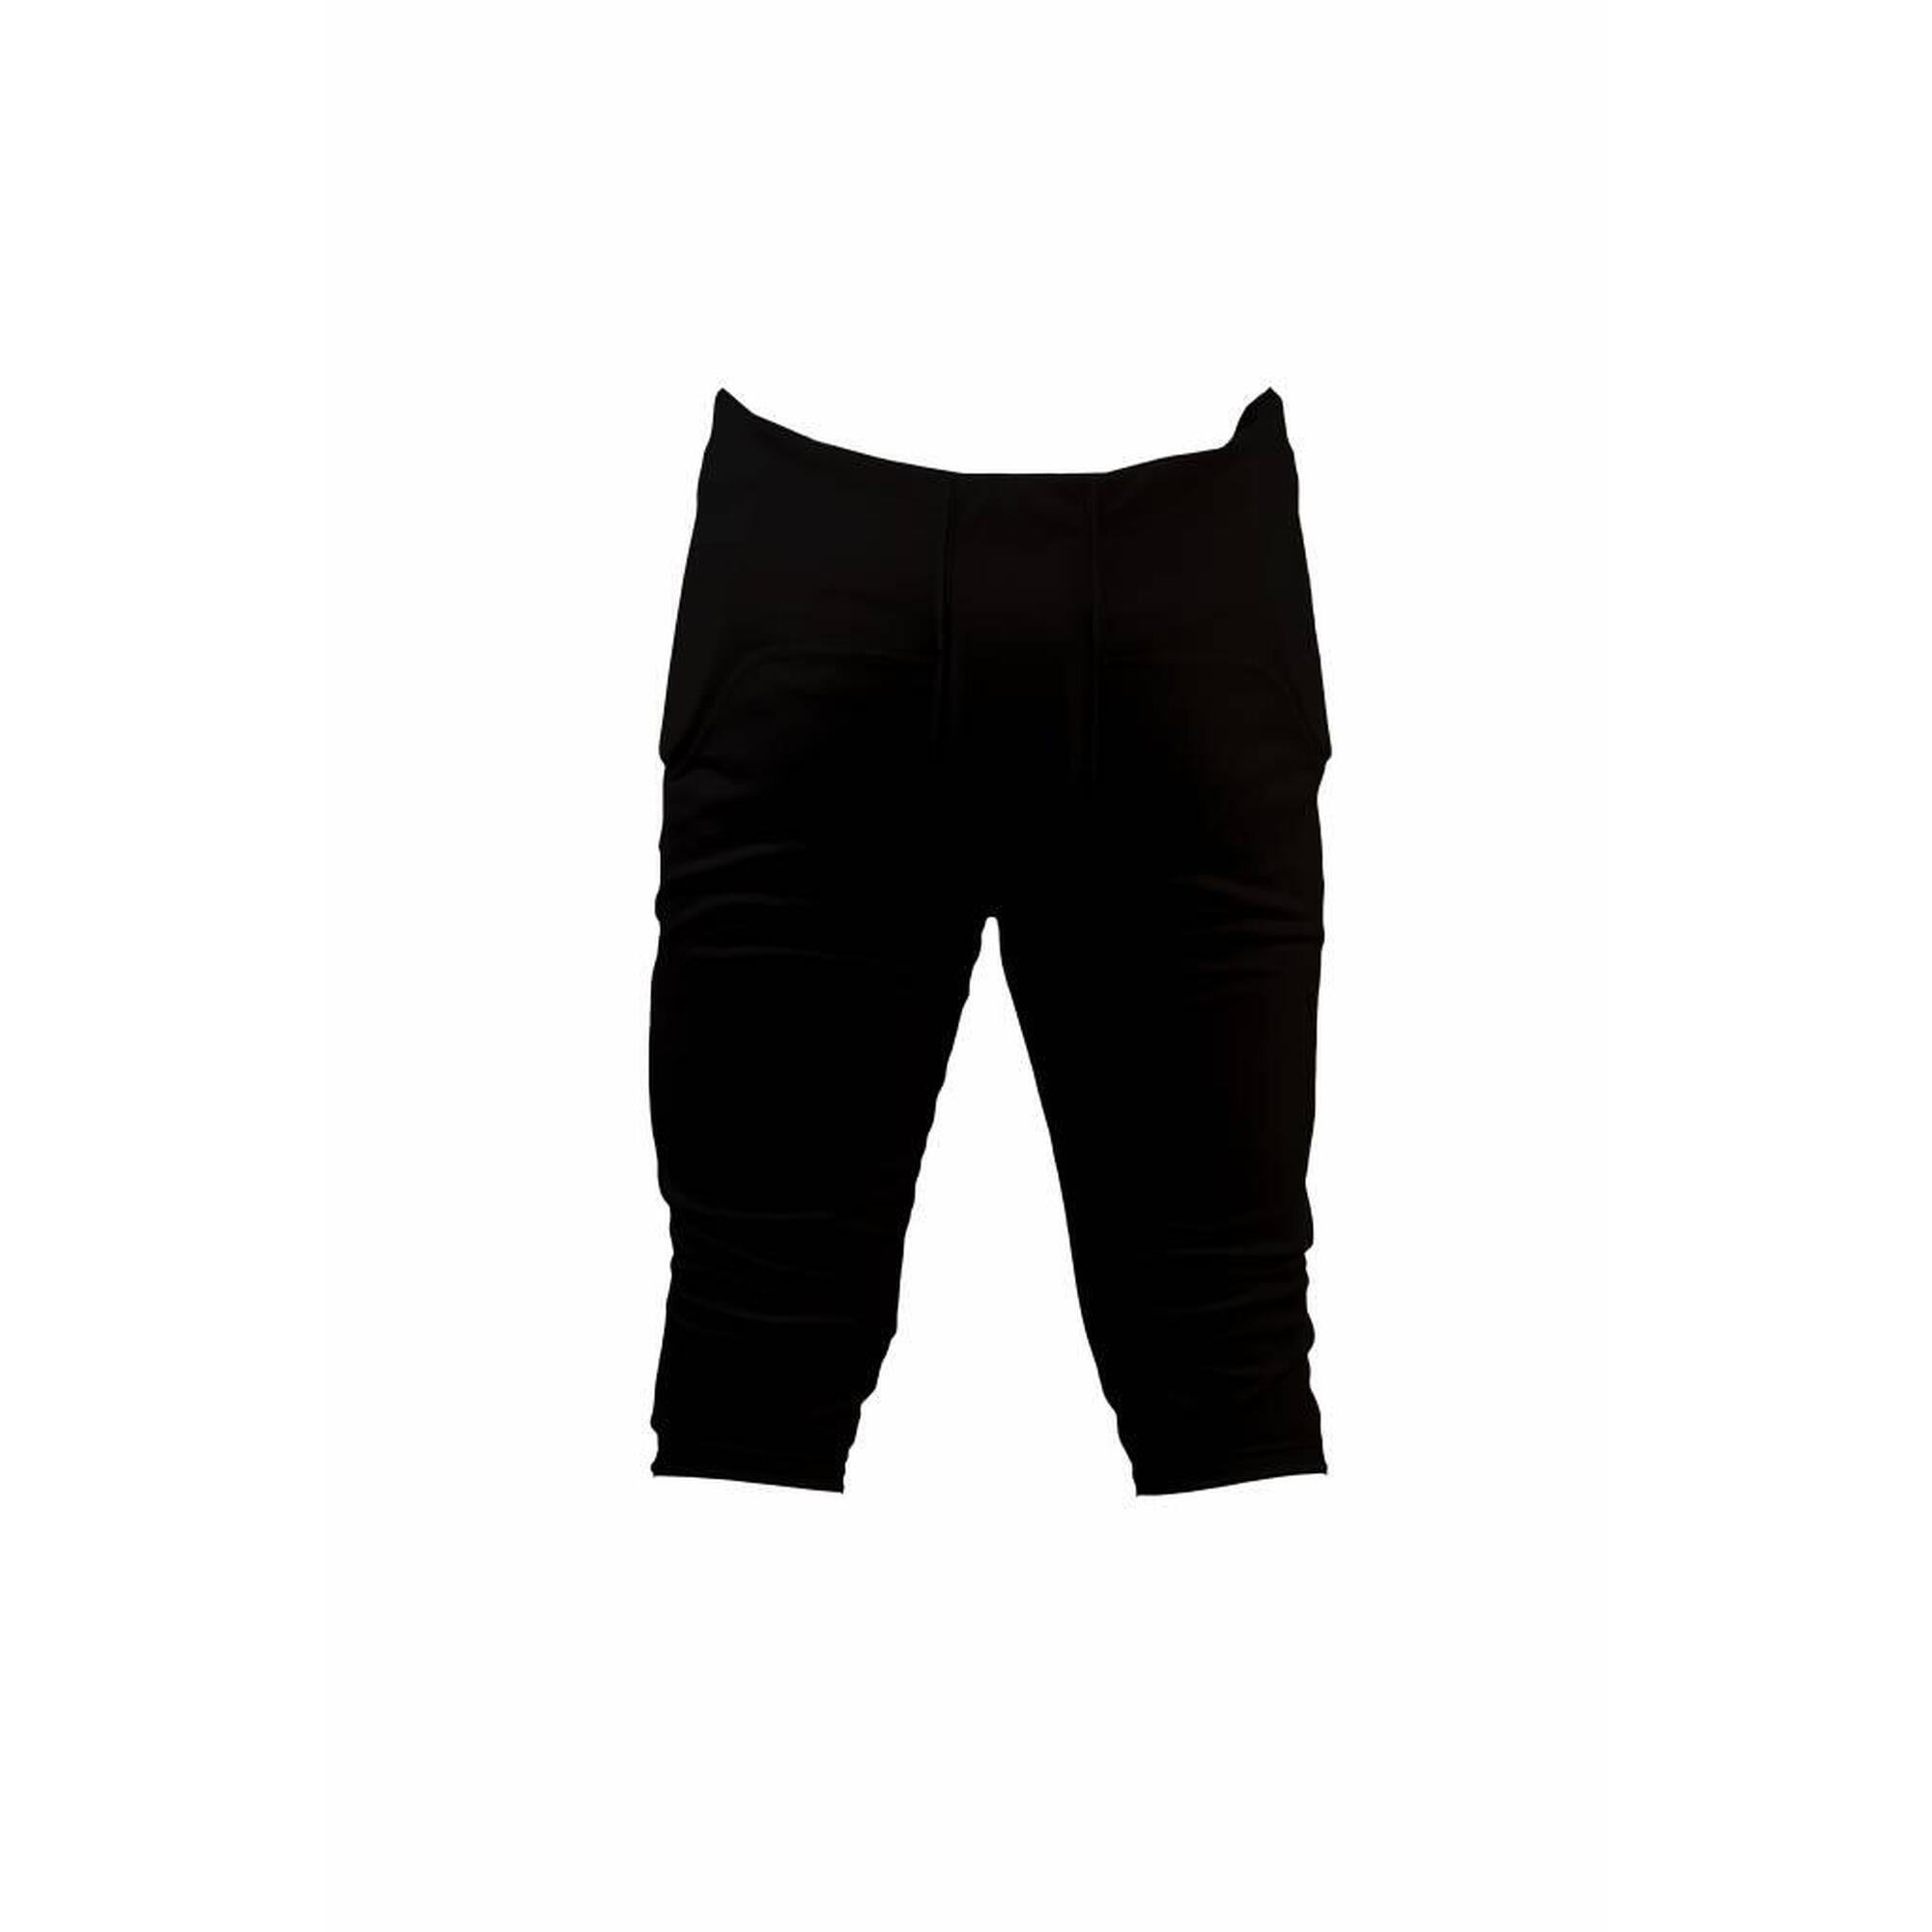 FPS-01 Černé kalhoty s integrovanými chrániči, 7 vycpávek